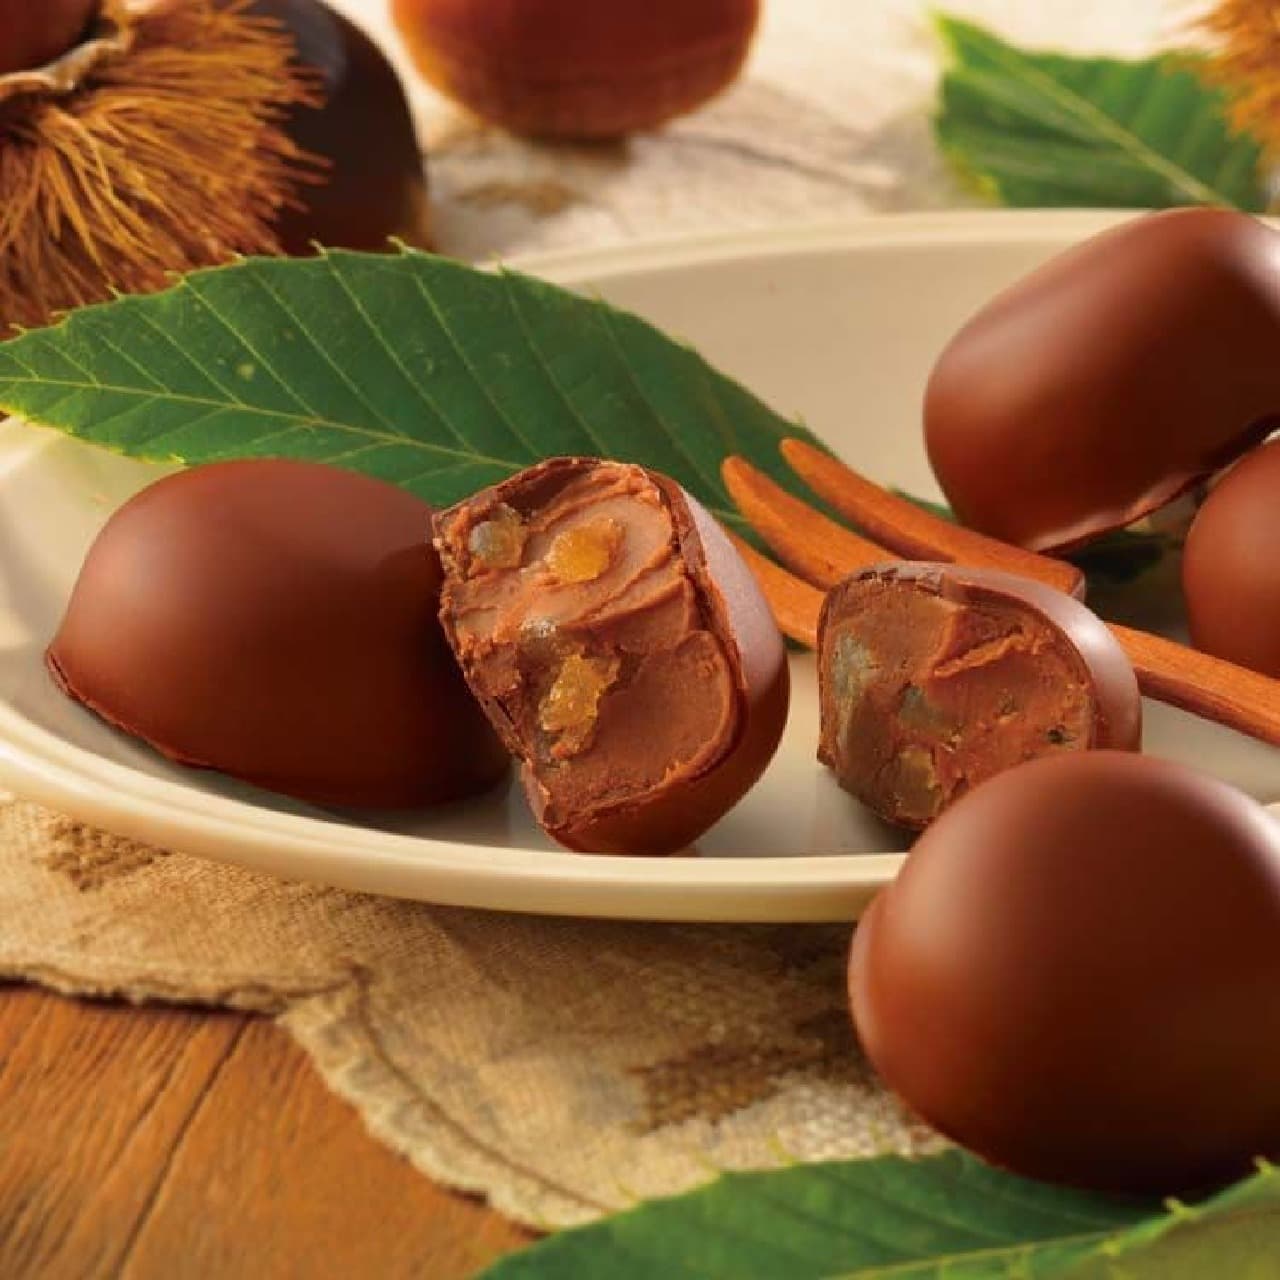 Lloyds "Chestnut Chocolat